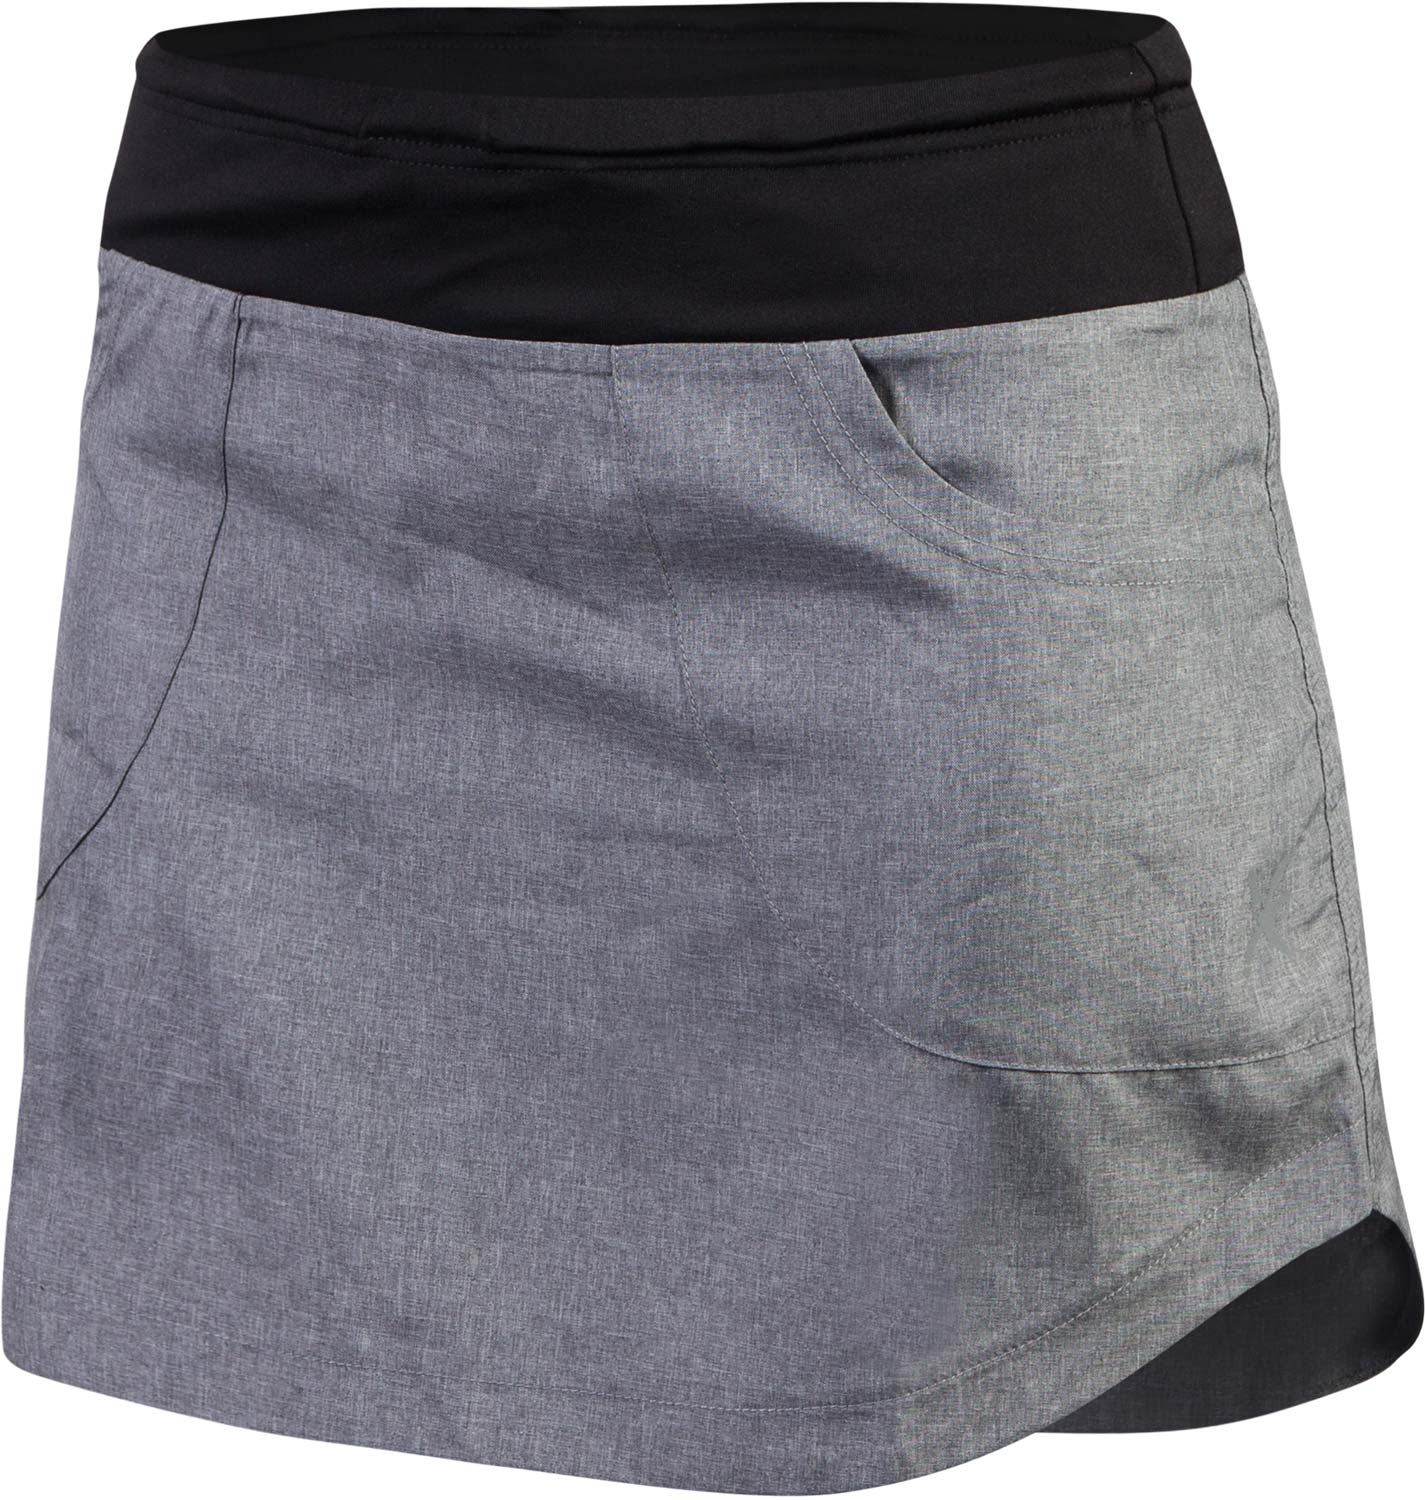 Women’s outdoor skirt